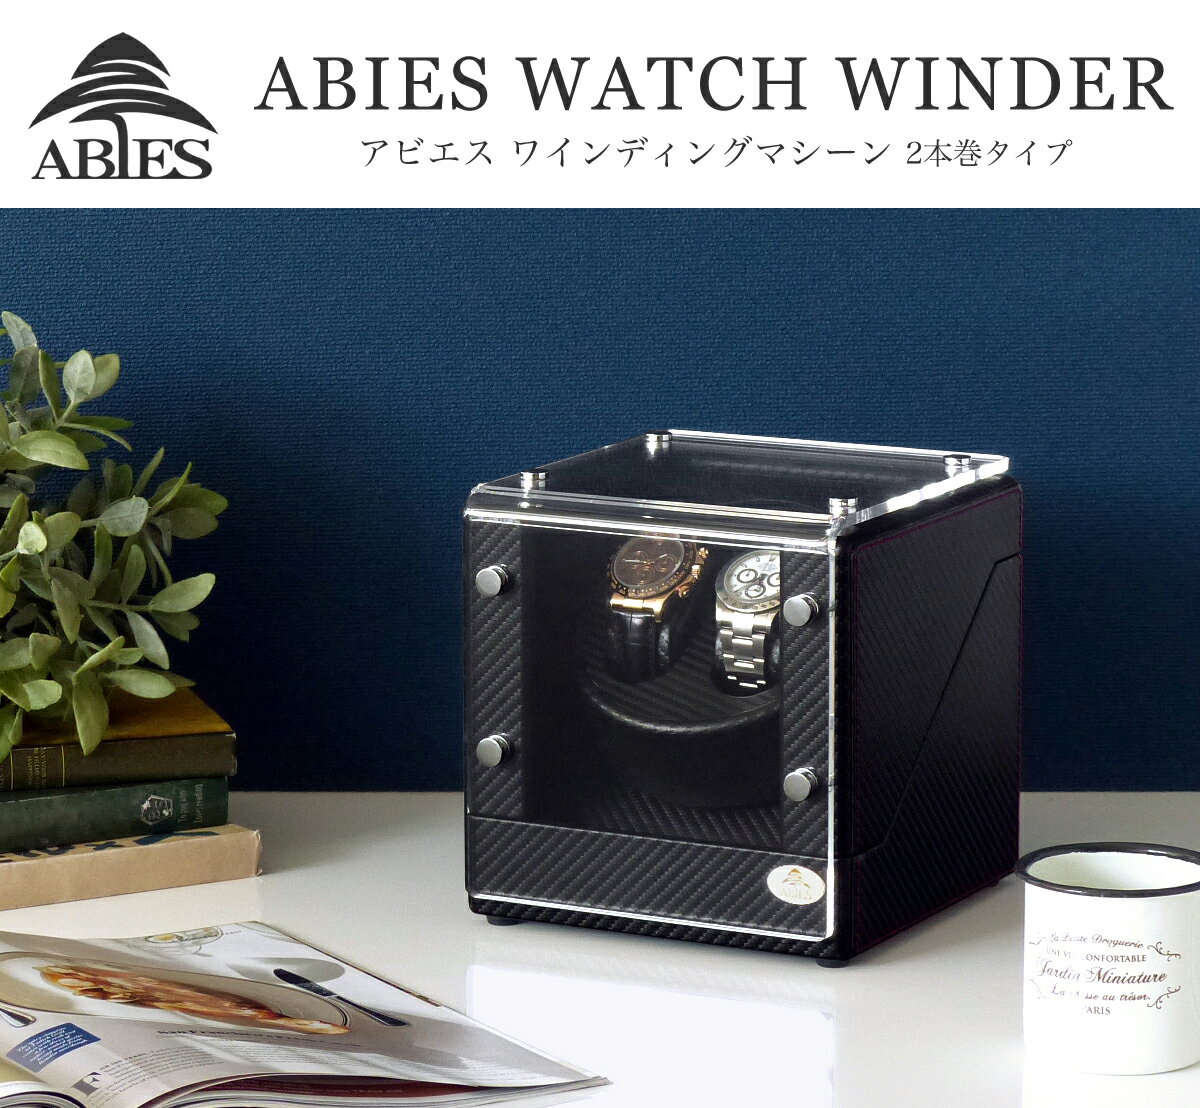 ワインディングマシーン 2本巻 カーボン調 WB Abies(アビエス) 2連 ウォッチワインダー プレゼント 腕時計 自動巻き ワインディングマシン ウォッチケース 2本 収納ケース メンズ レディース ケース 時計ケース ワインダー